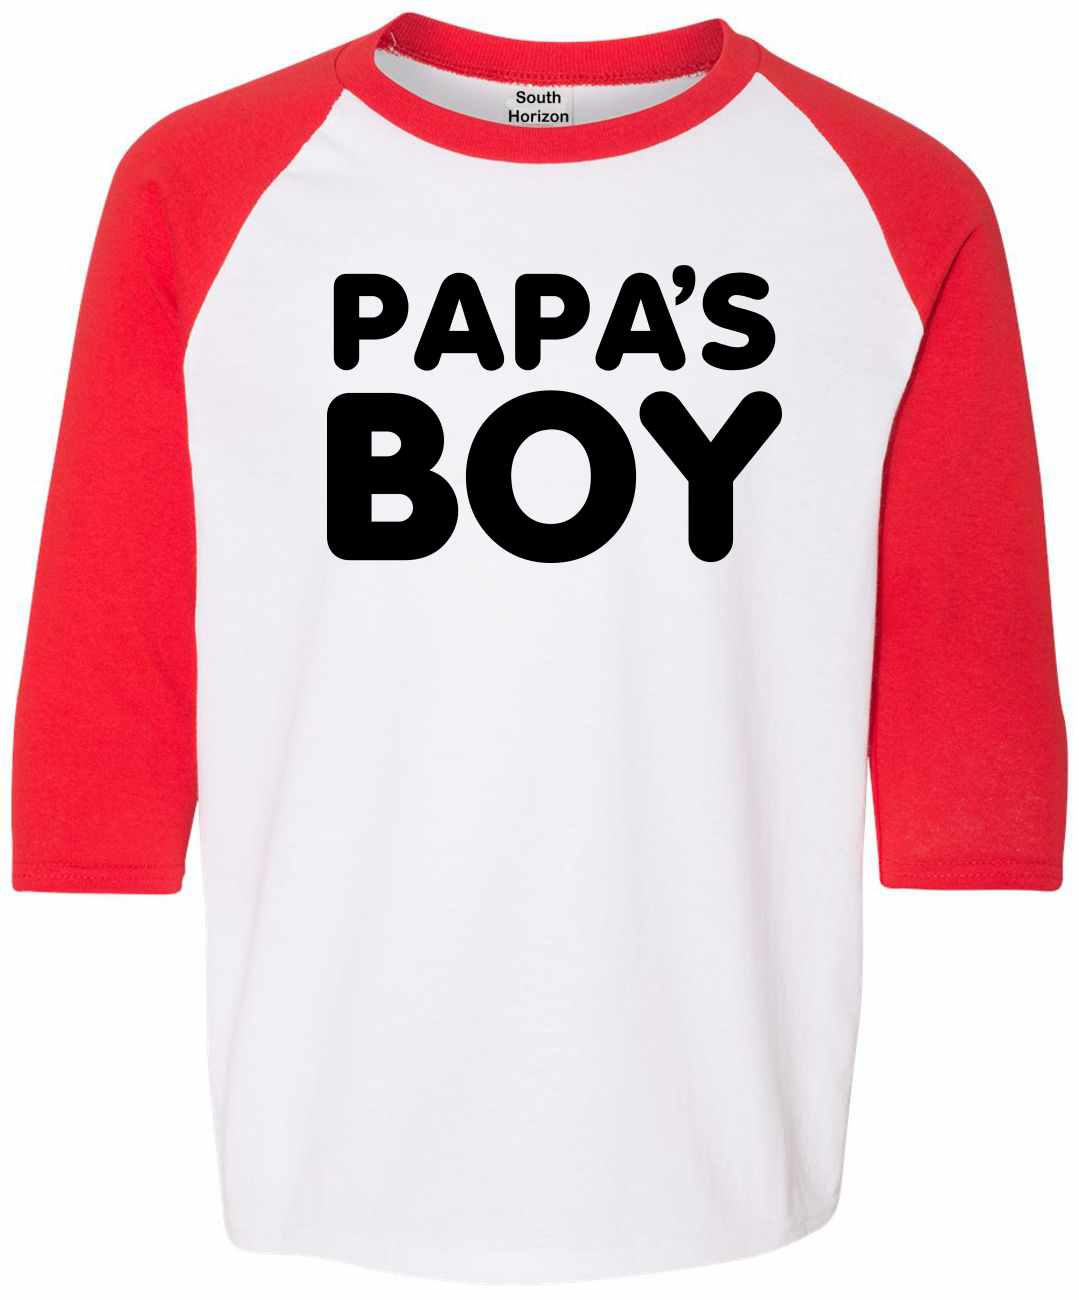 Papa's Boy on Youth Baseball Shirt